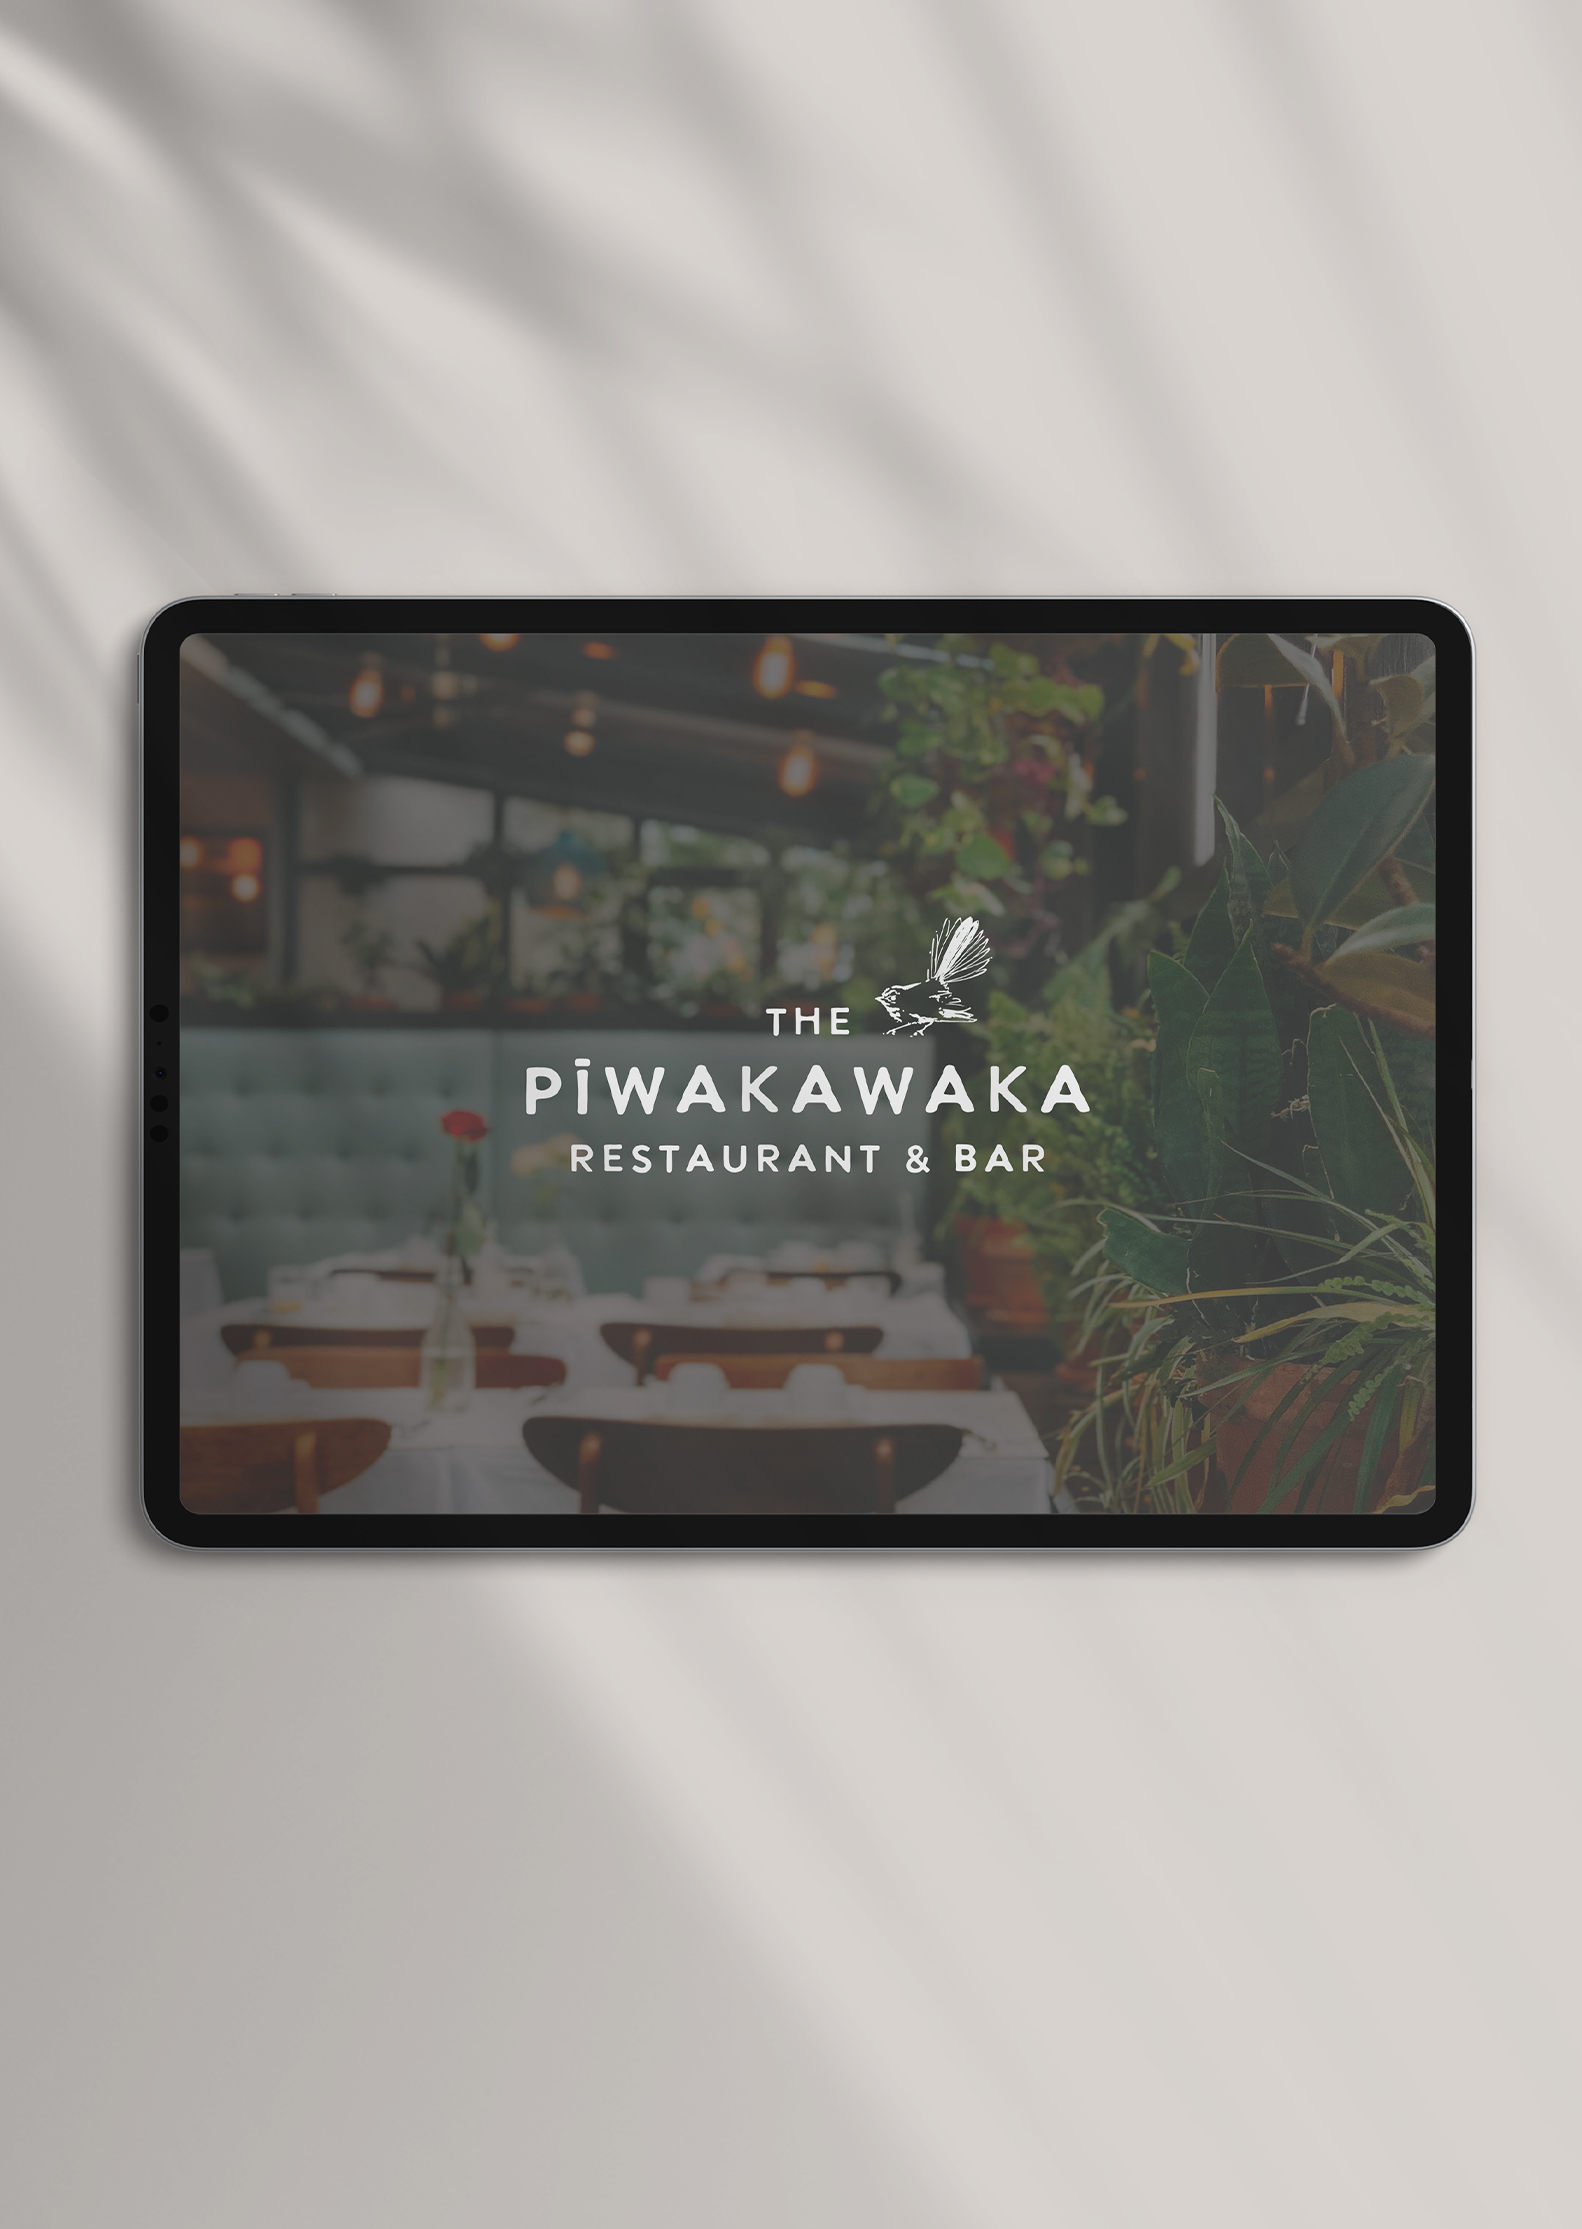 The Piwakawaka